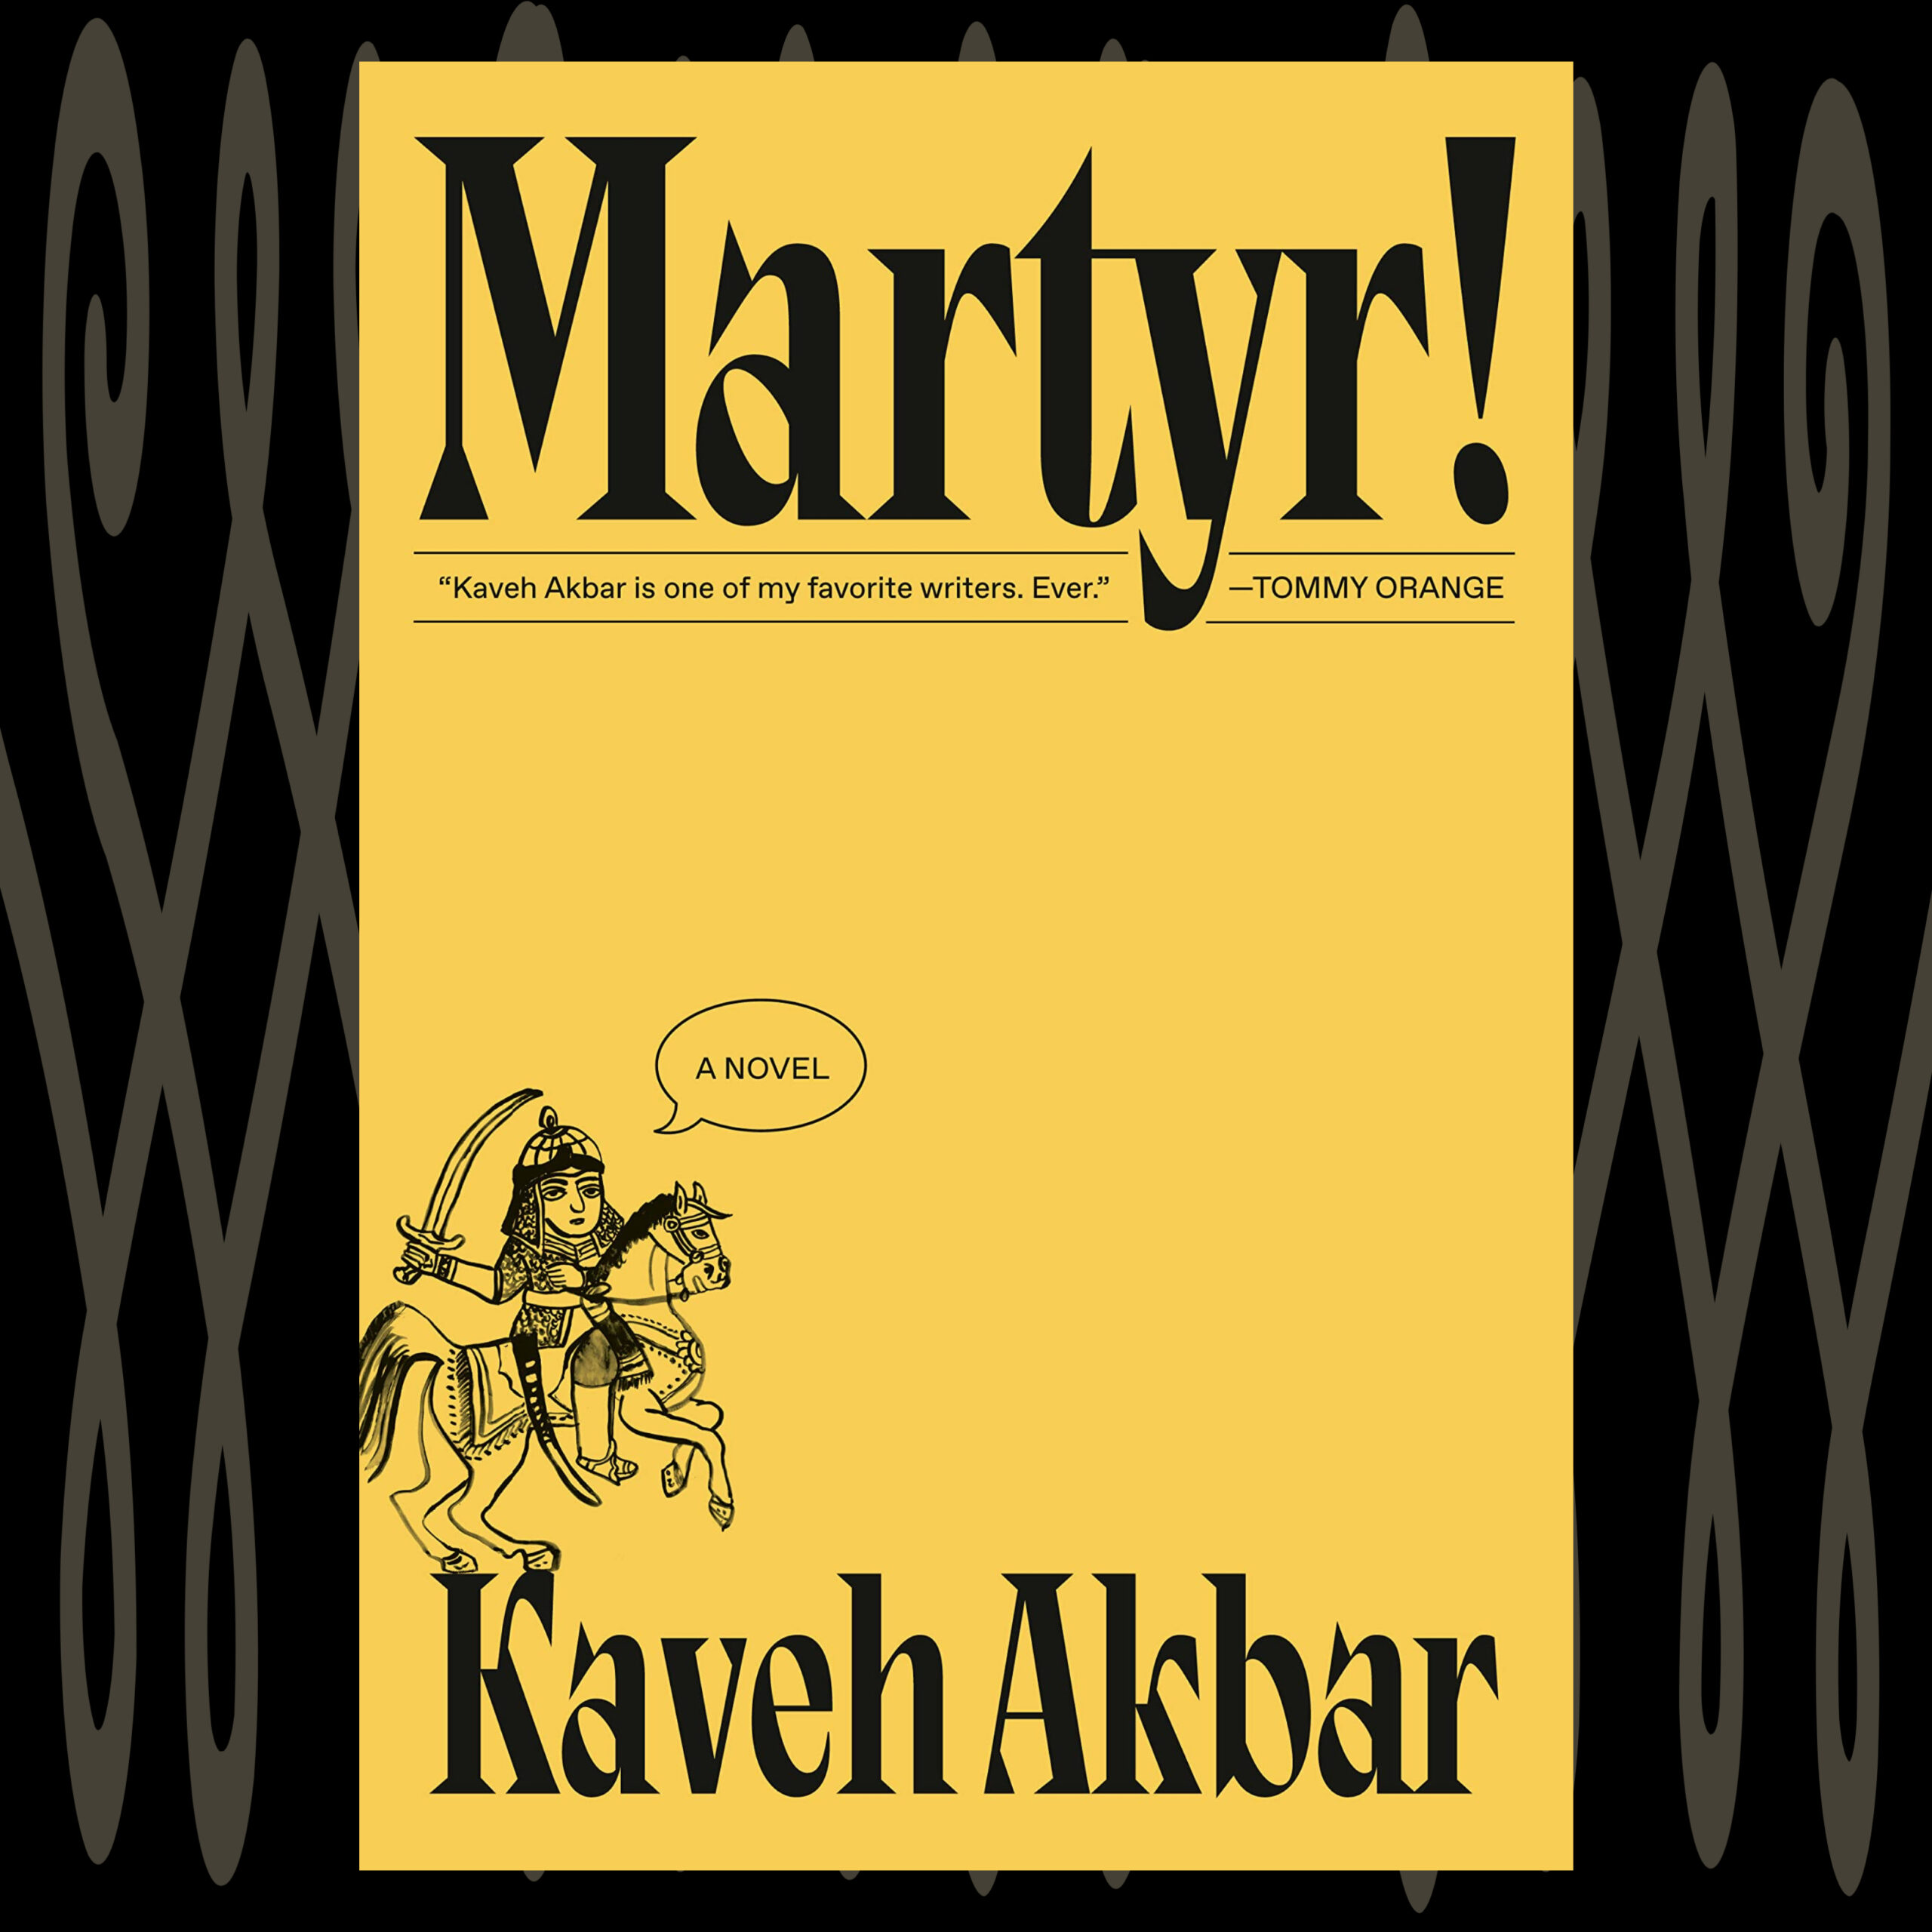 The Book Show | Kaveh Akbar – Martyr!